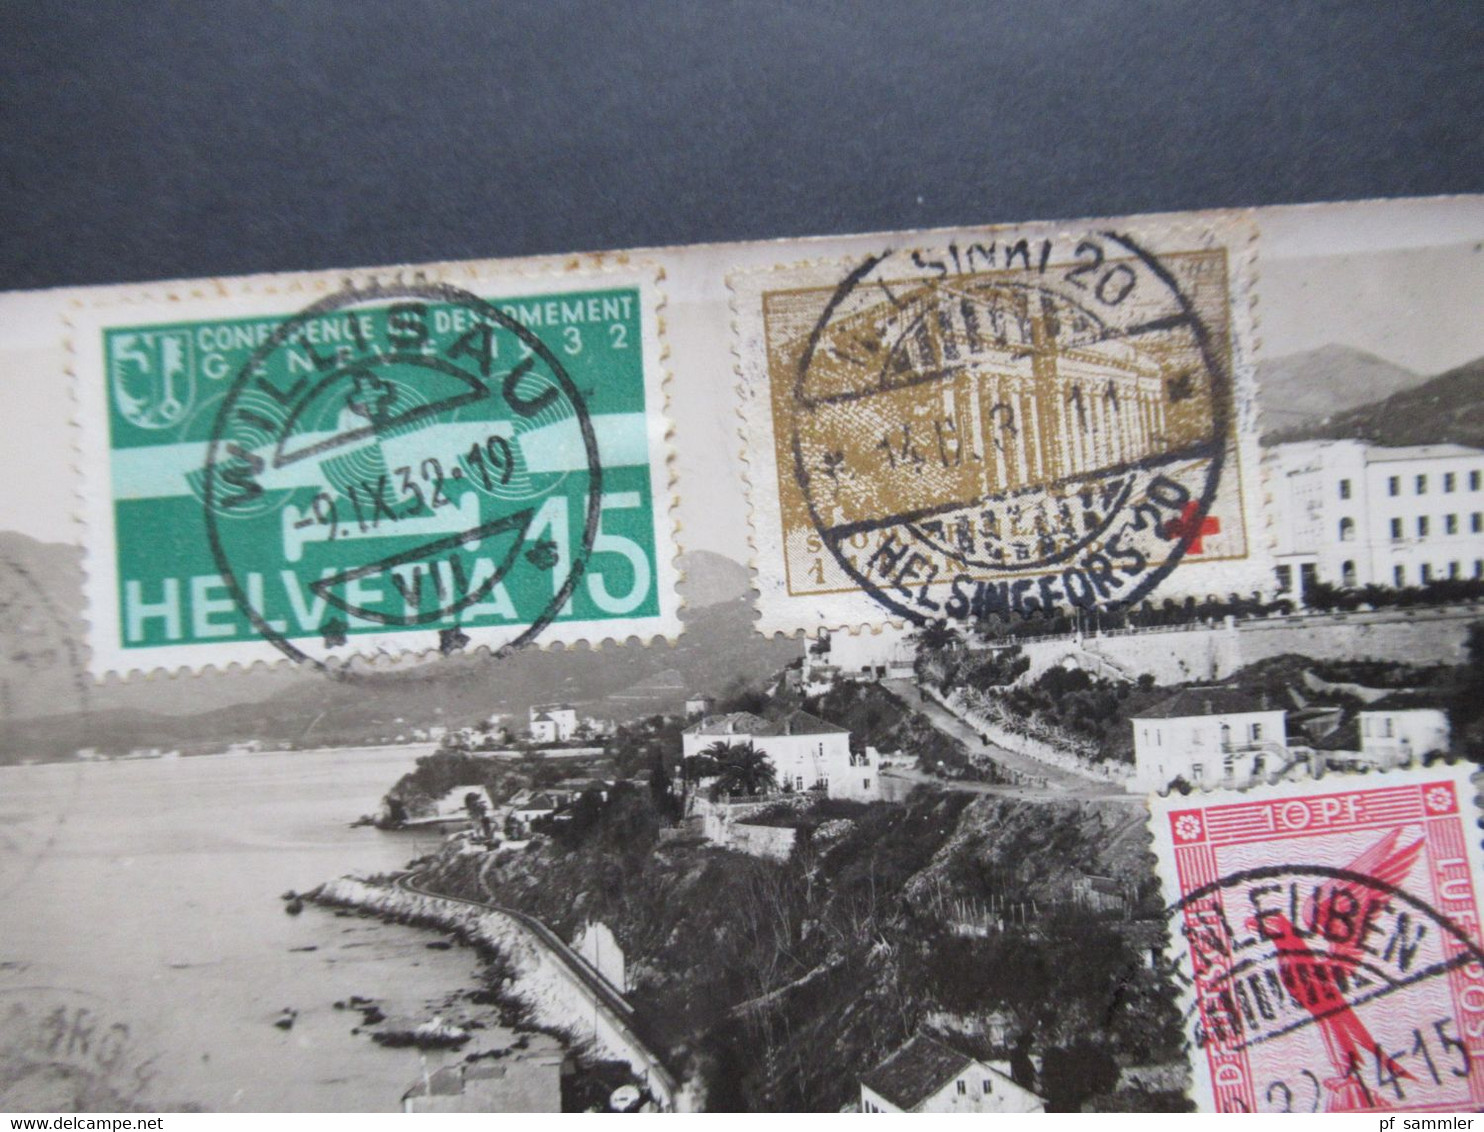 1932 Echtfoto AK Ungelaufen ABER Vorderseitig Frankiert Mit Luftpostmarken Verschiedener Länder!! Schweiz, Finnland Usw. - Covers & Documents